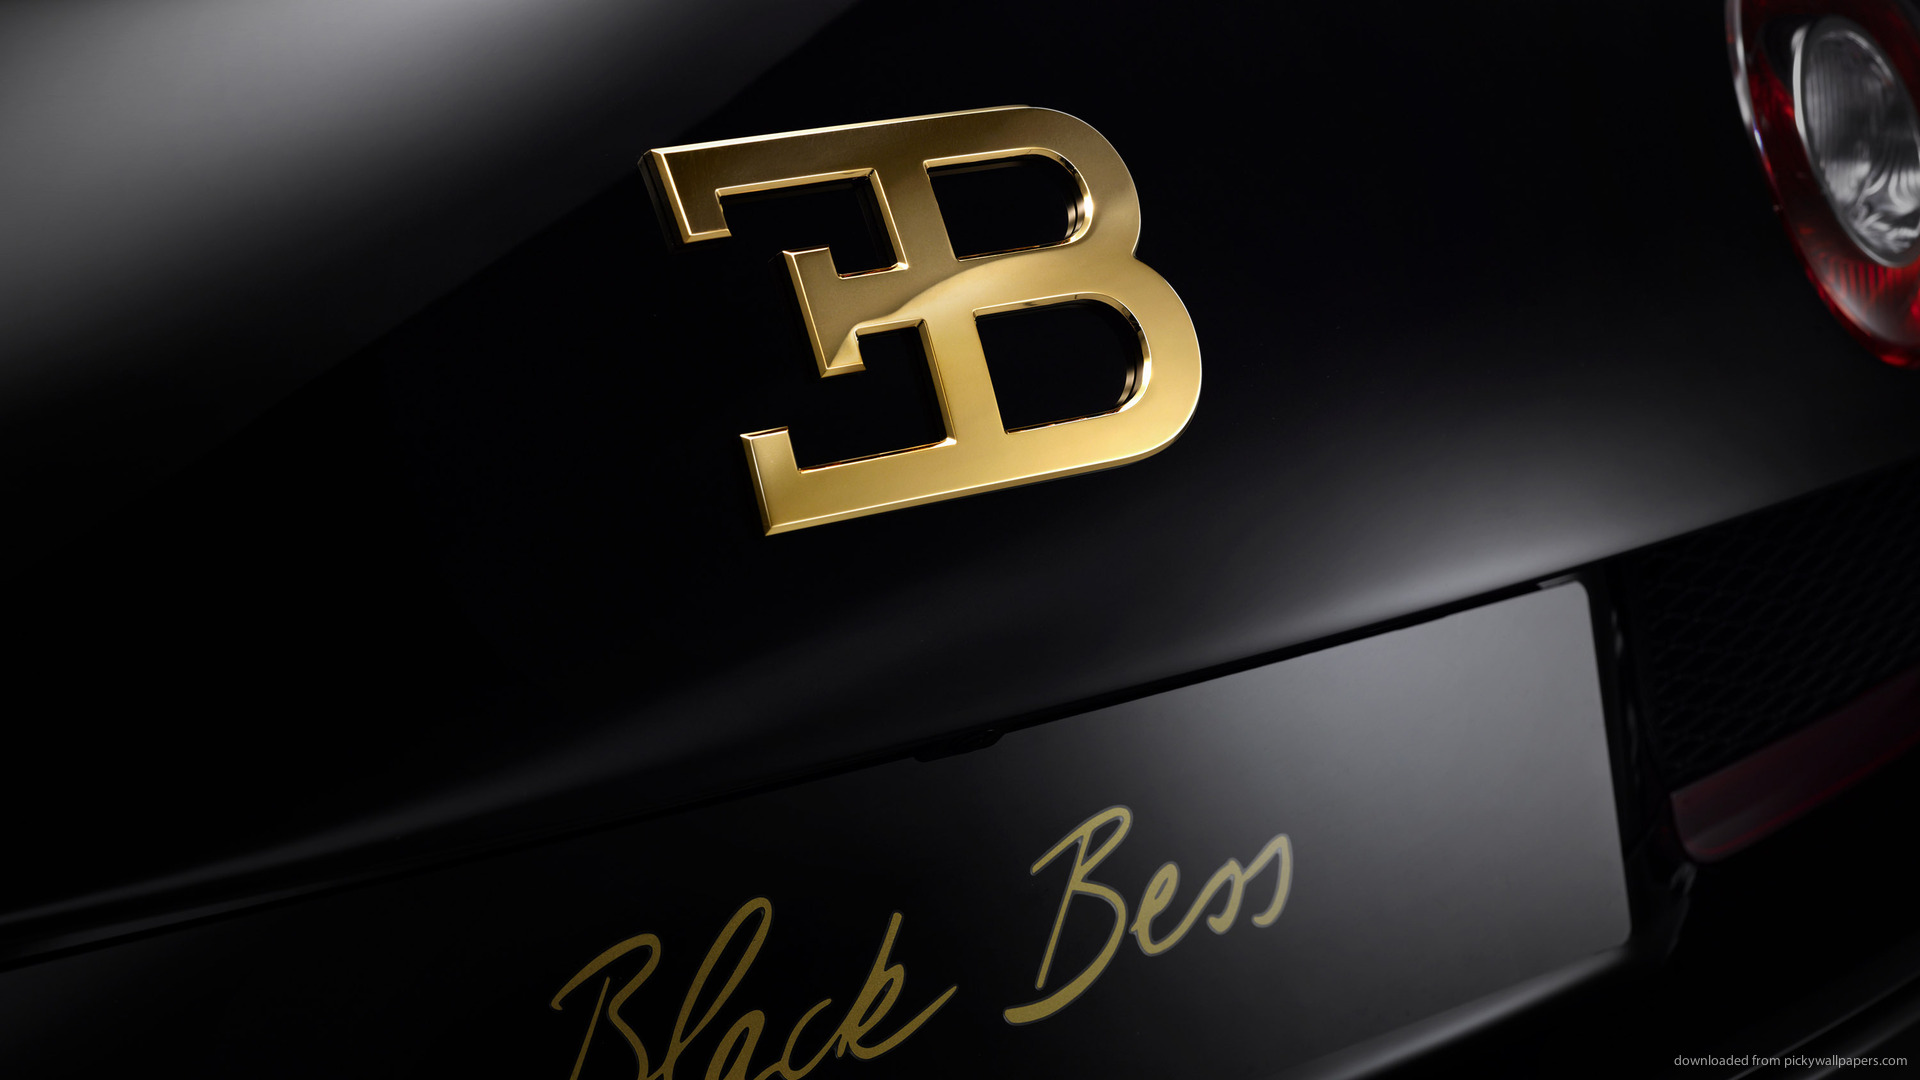 Bugatti Veyron Grand Sport Vitesse Black Bess Logo Wallpaper For